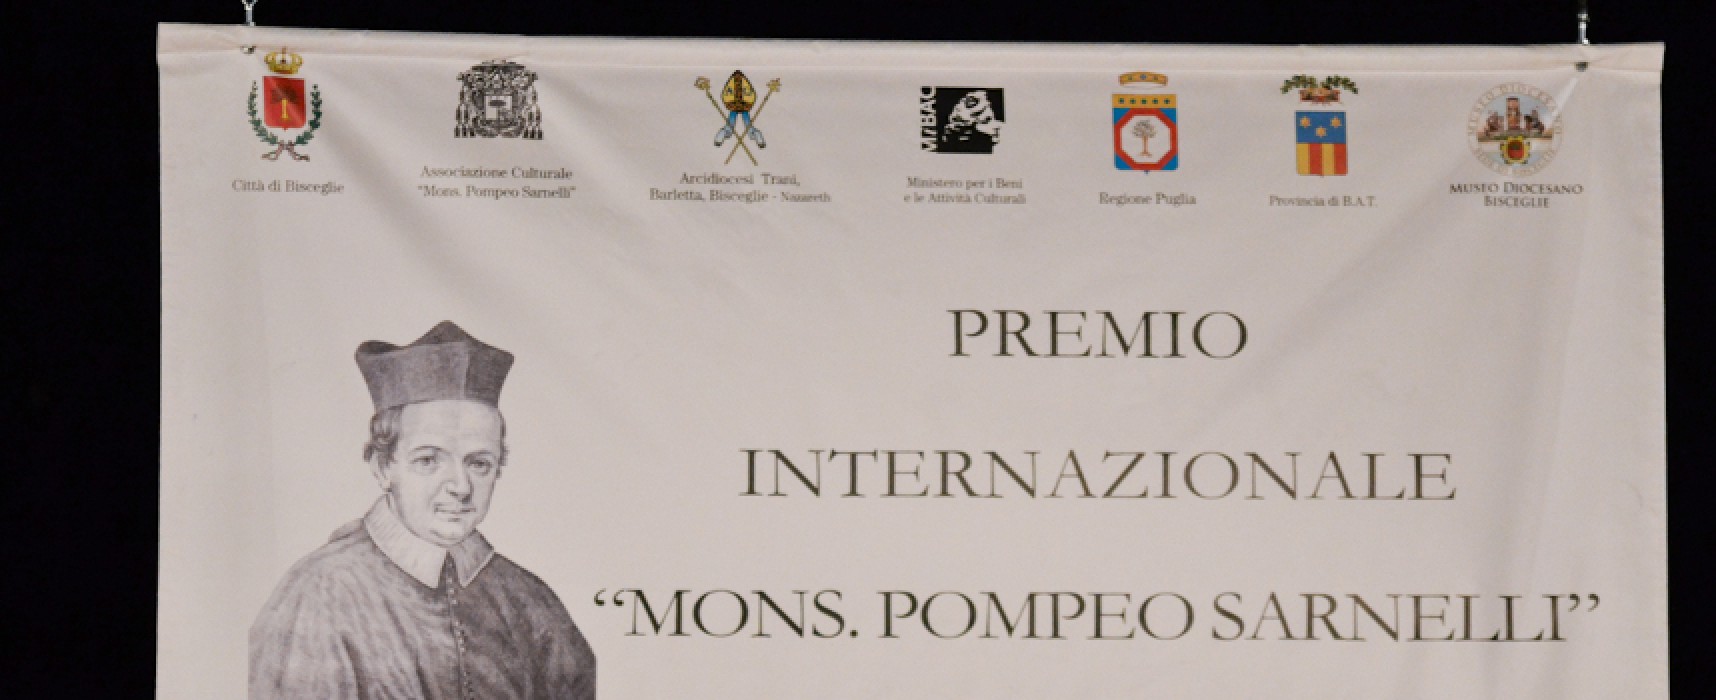 XIII Premio “Mons. Pompeo Sarnelli”, ecco i nomi delle personalità premiate